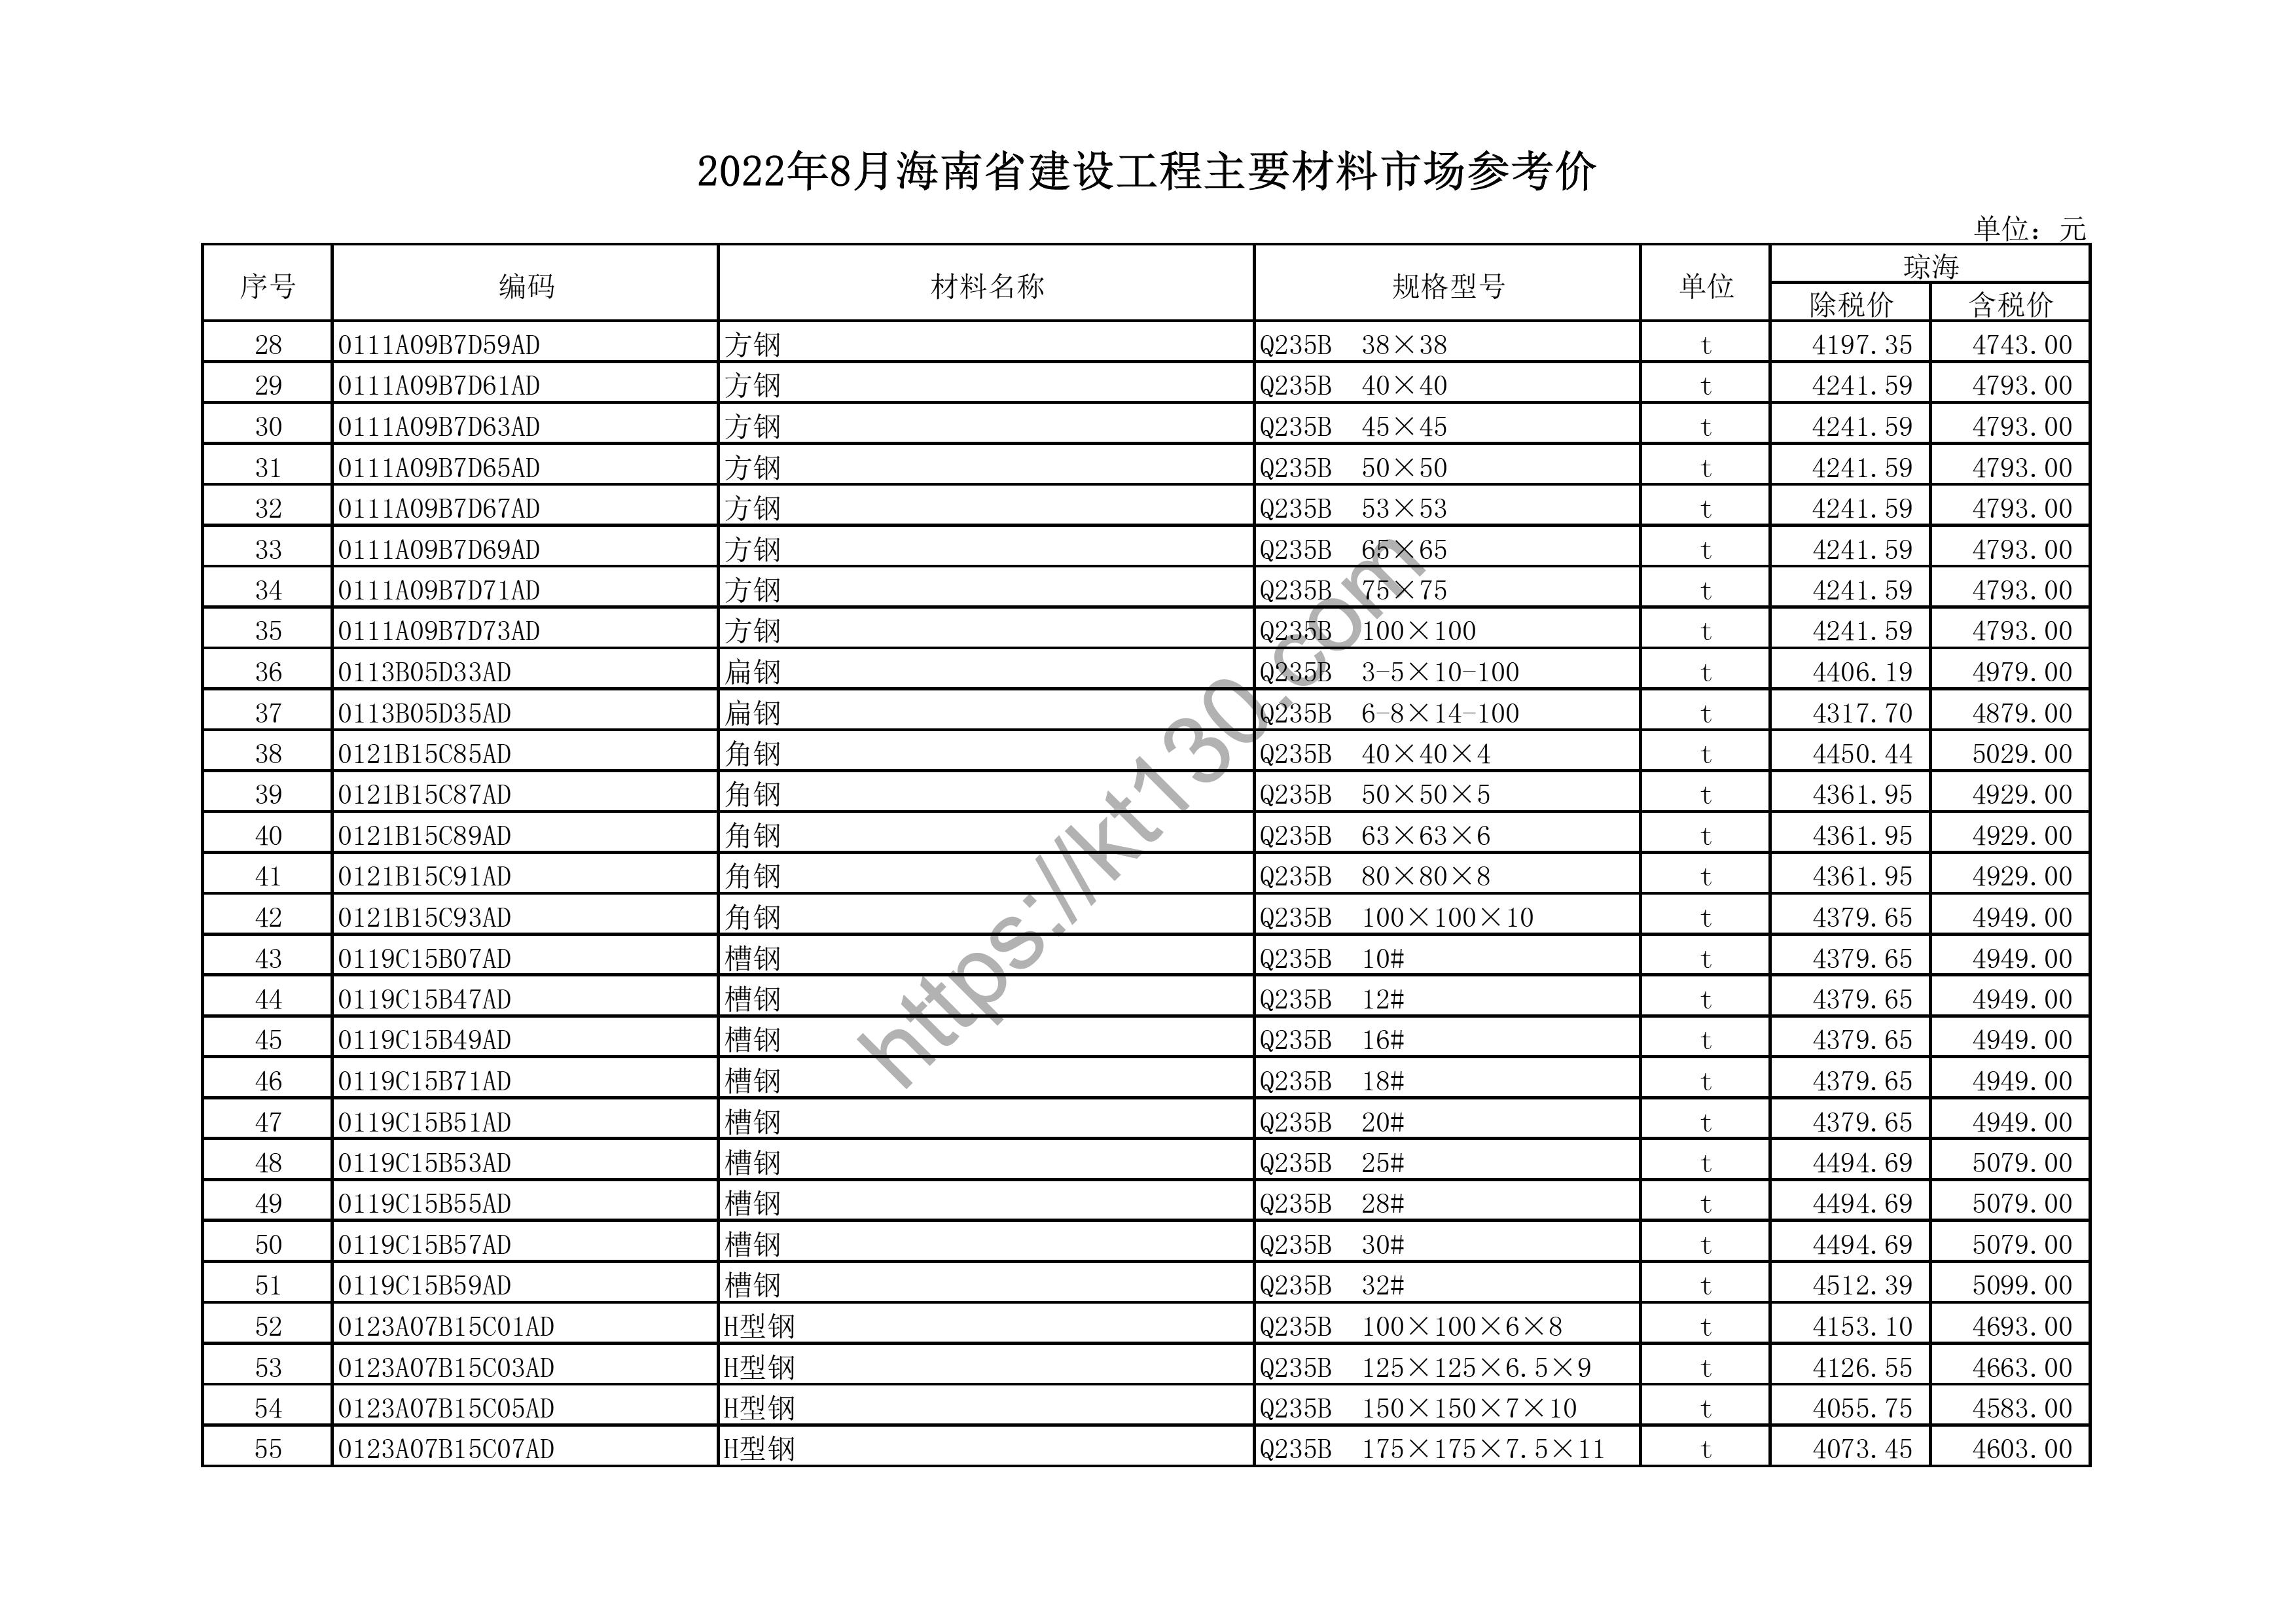 海南省2022年8月建筑材料价_冷水管_44648